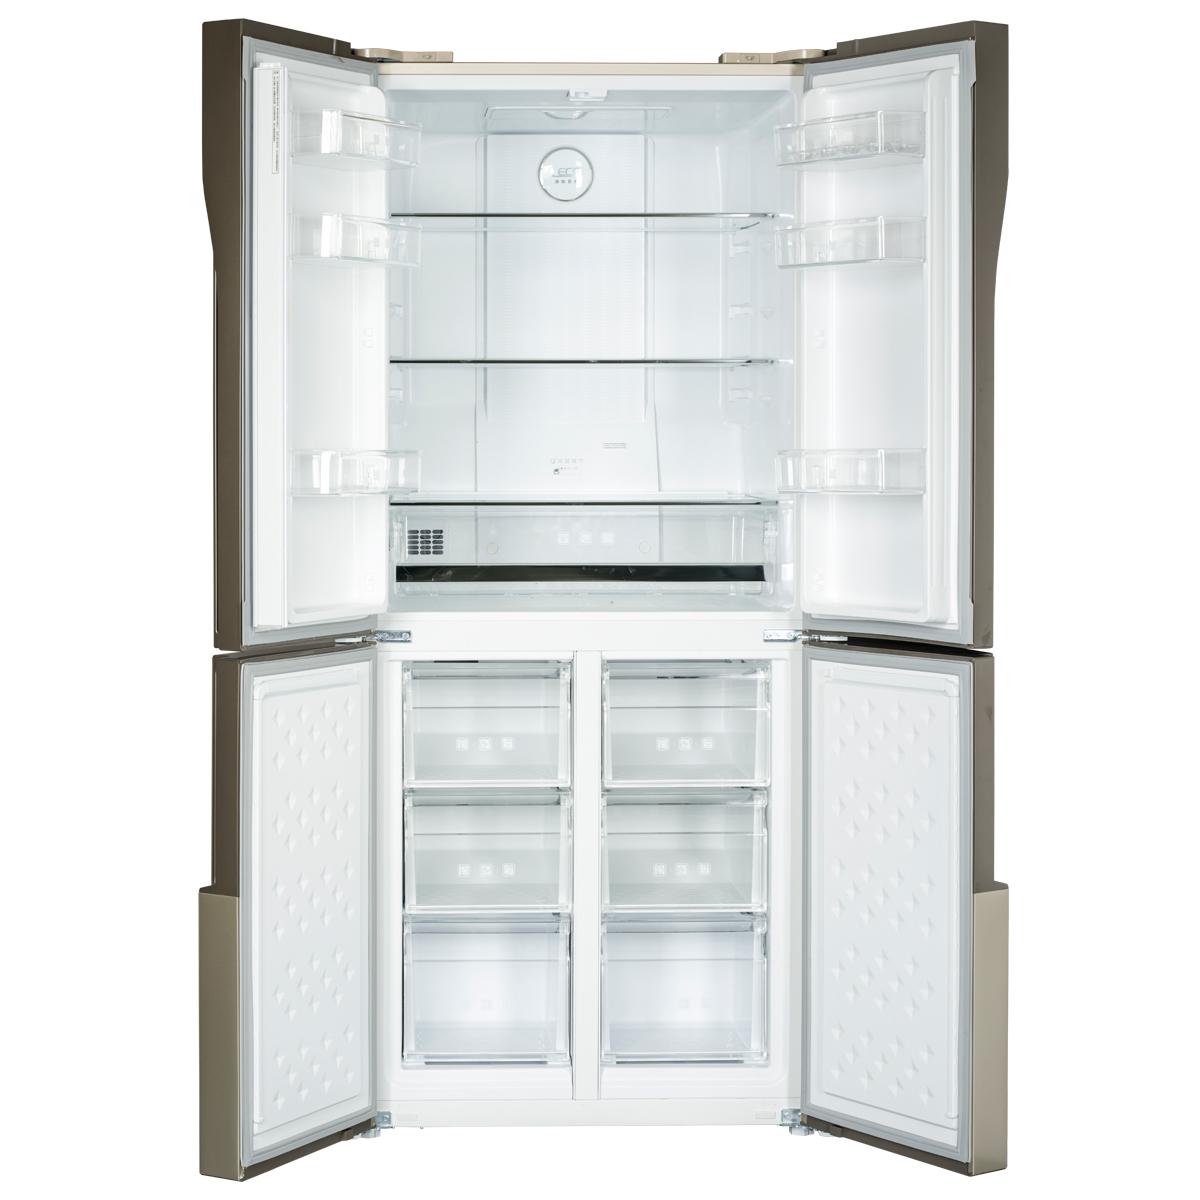 【美的美的 冰箱 BCD-432WGPZM 玫瑰金】美的冰箱,美的 冰箱 BCD-432WGPZM 玫瑰金,官方报价_规格_参数_图片-美的商城